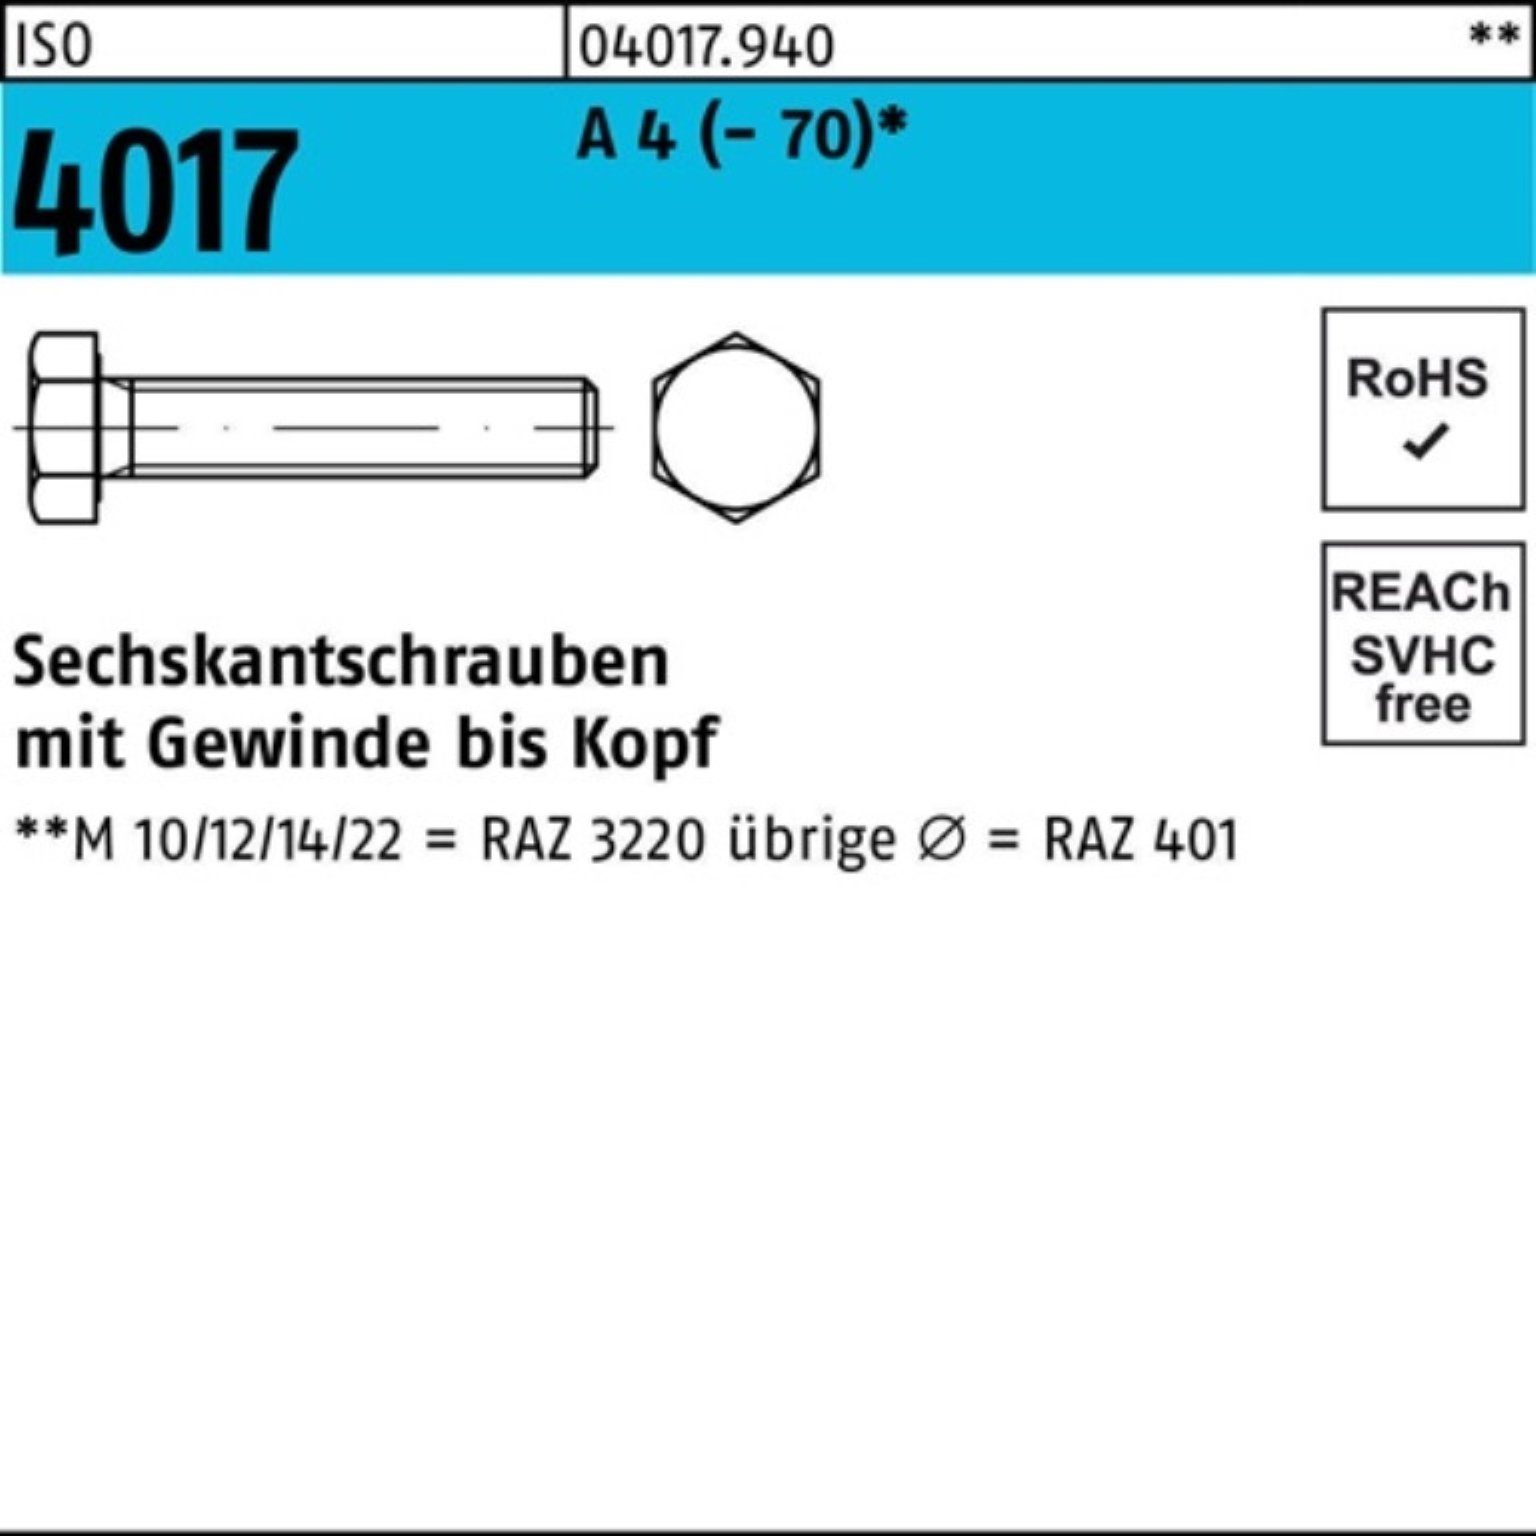 Pack 100er Stück VG A 4 Bufab ISO 1 Sechskantschraube 4017 M12x I 95 (70) Sechskantschraube